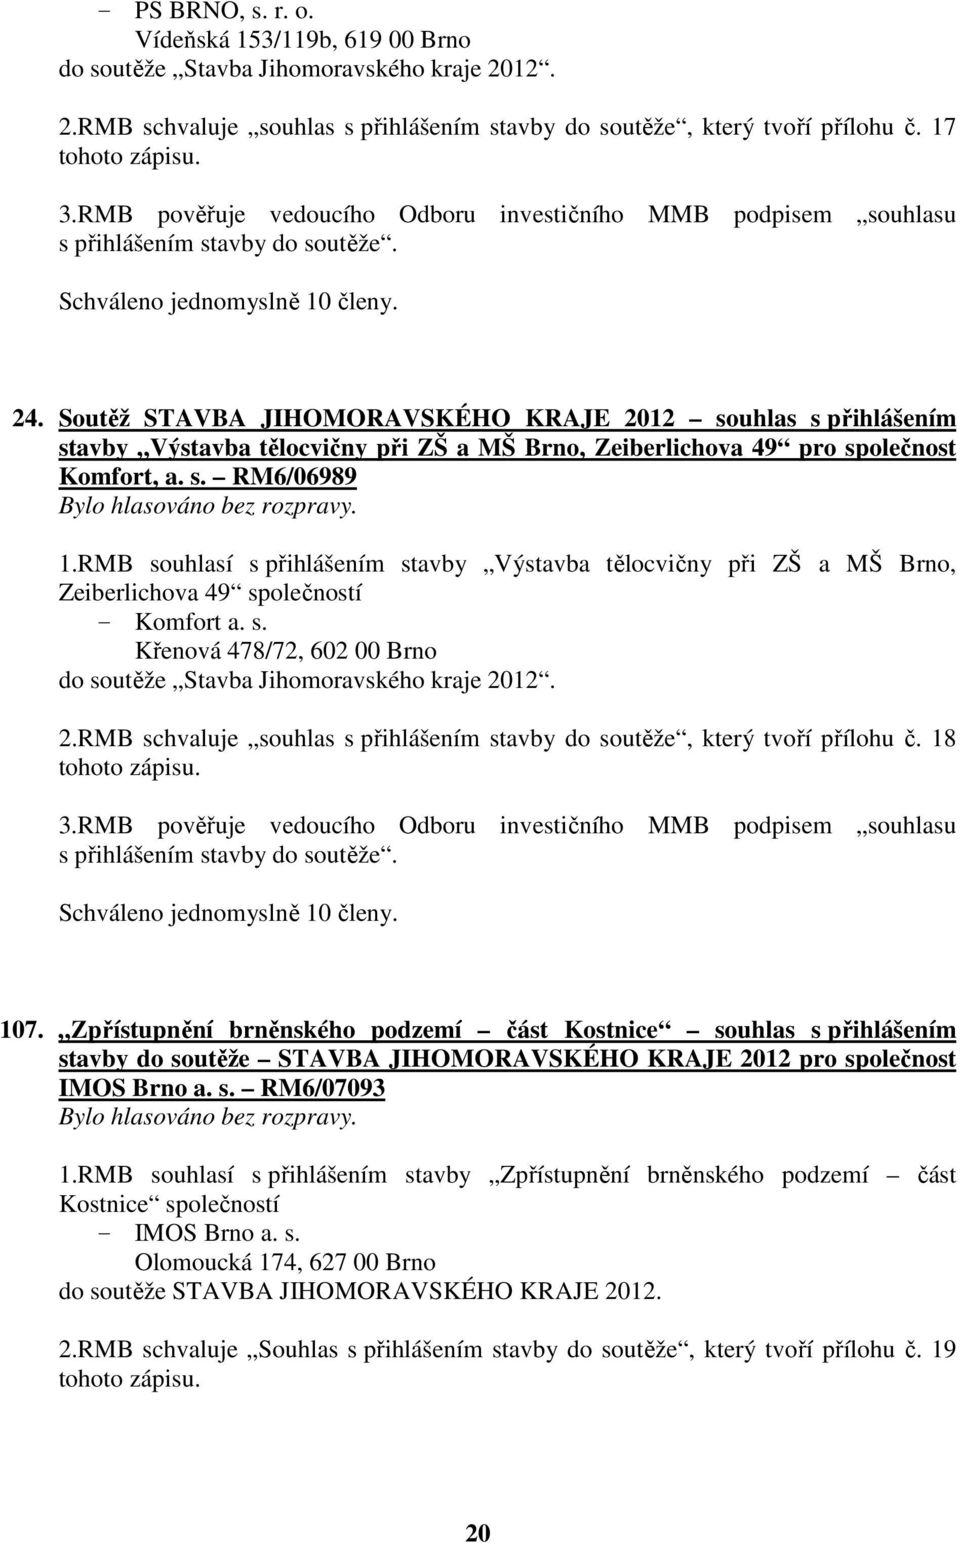 Soutěž STAVBA JIHOMORAVSKÉHO KRAJE 2012 souhlas s přihlášením stavby Výstavba tělocvičny při ZŠ a MŠ Brno, Zeiberlichova 49 pro společnost Komfort, a. s. RM6/06989 1.